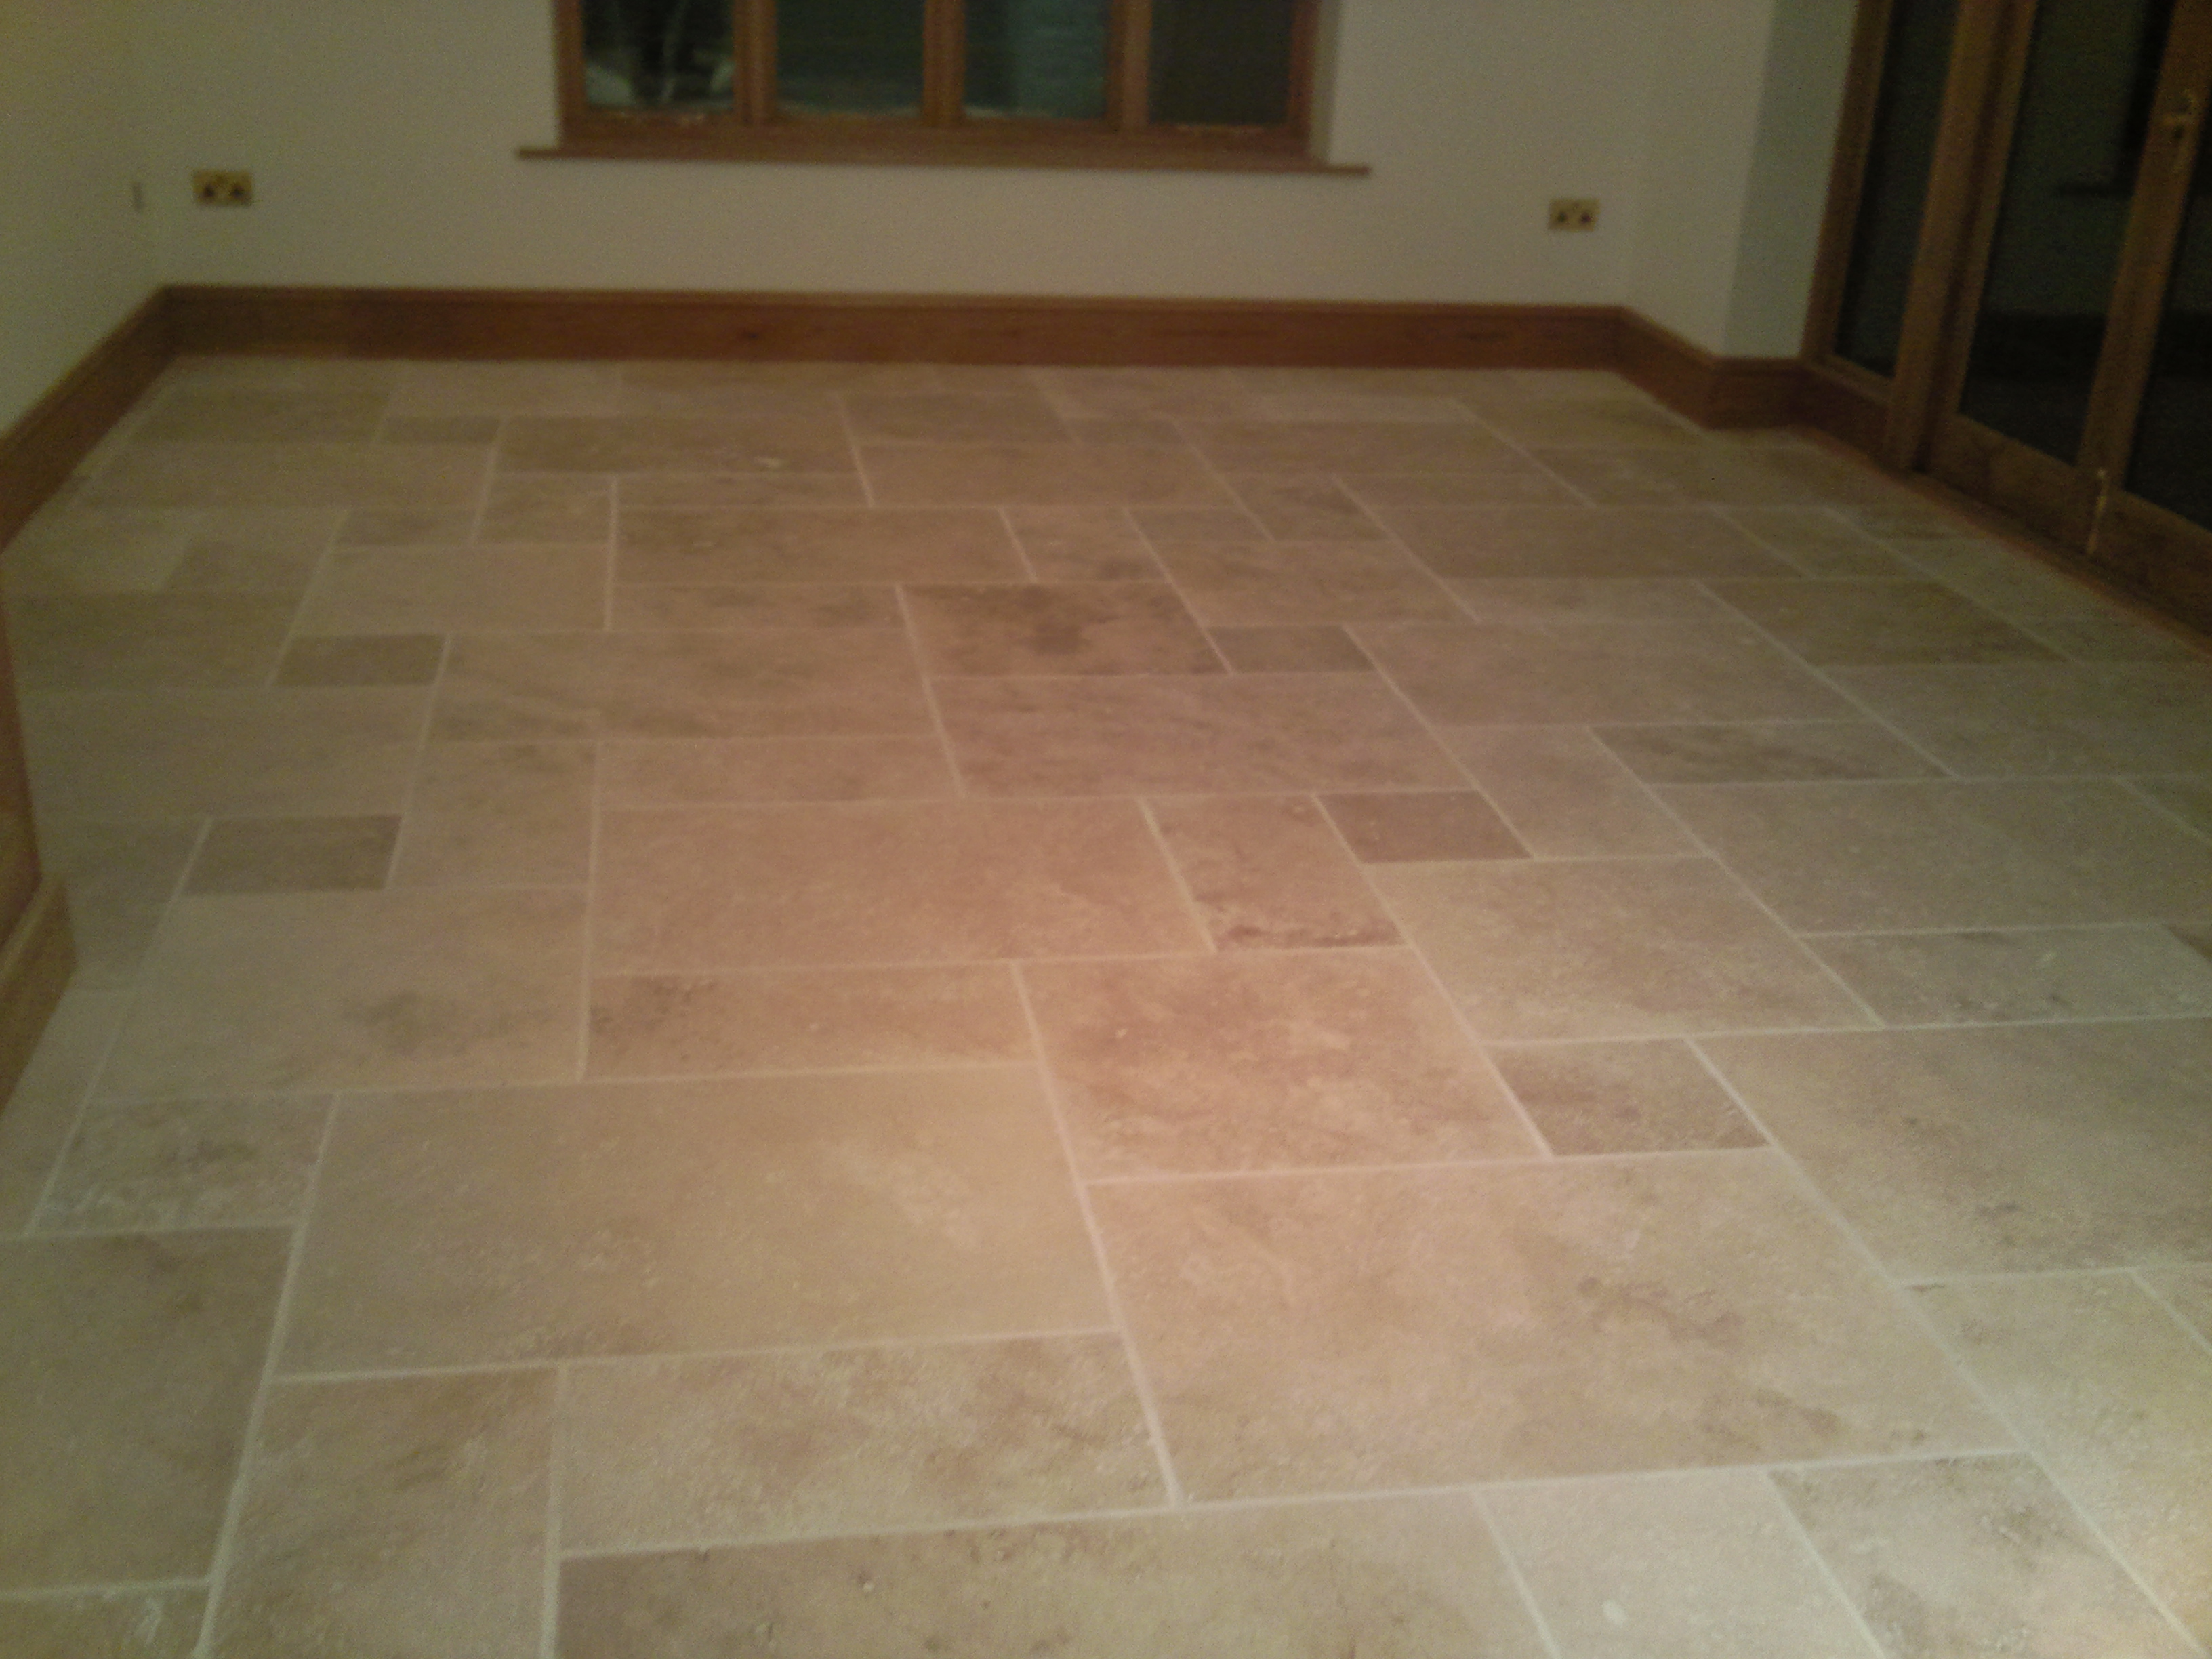 Roman opus stone floor